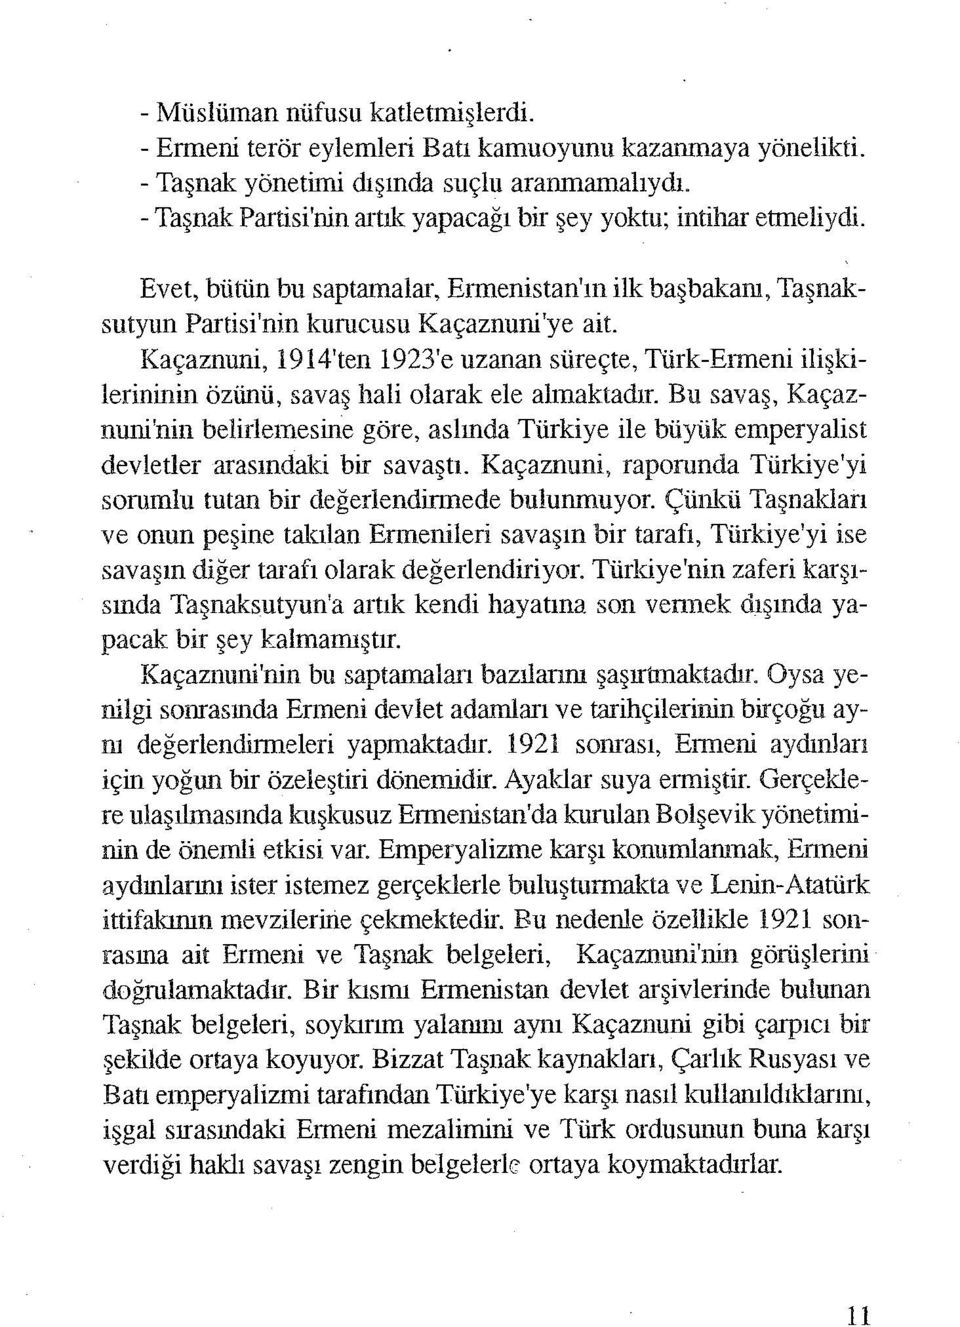 Kaçaznuni, 1914'ten 1923'e uzanan süreçte, Türk-Enneni ilişkilerininin özünü, savaş hali olarak ele almaktadır.